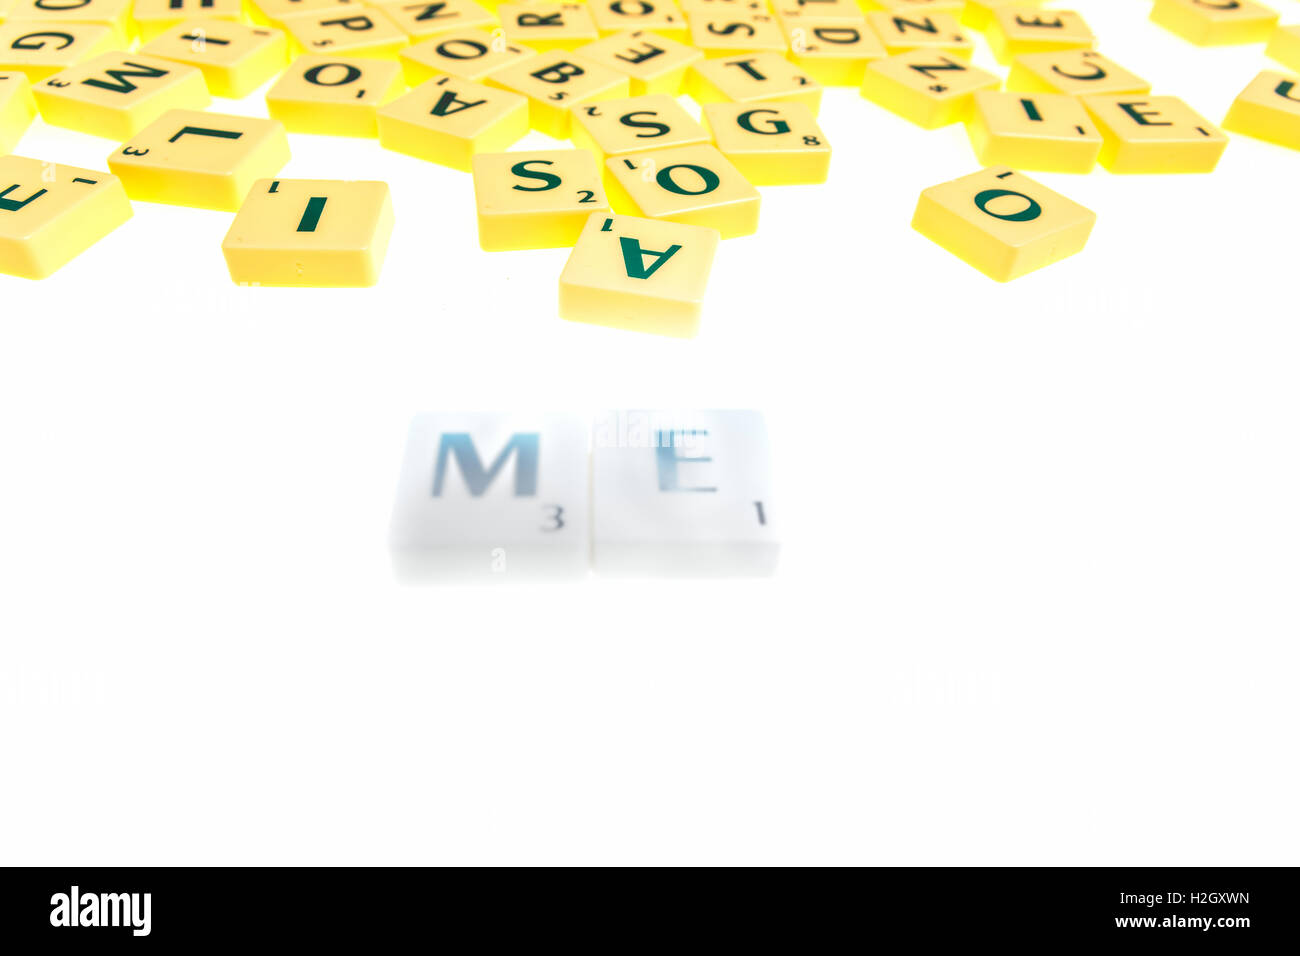 El juego de mesa con azulejos con letras para formar palabras y frases Foto de stock